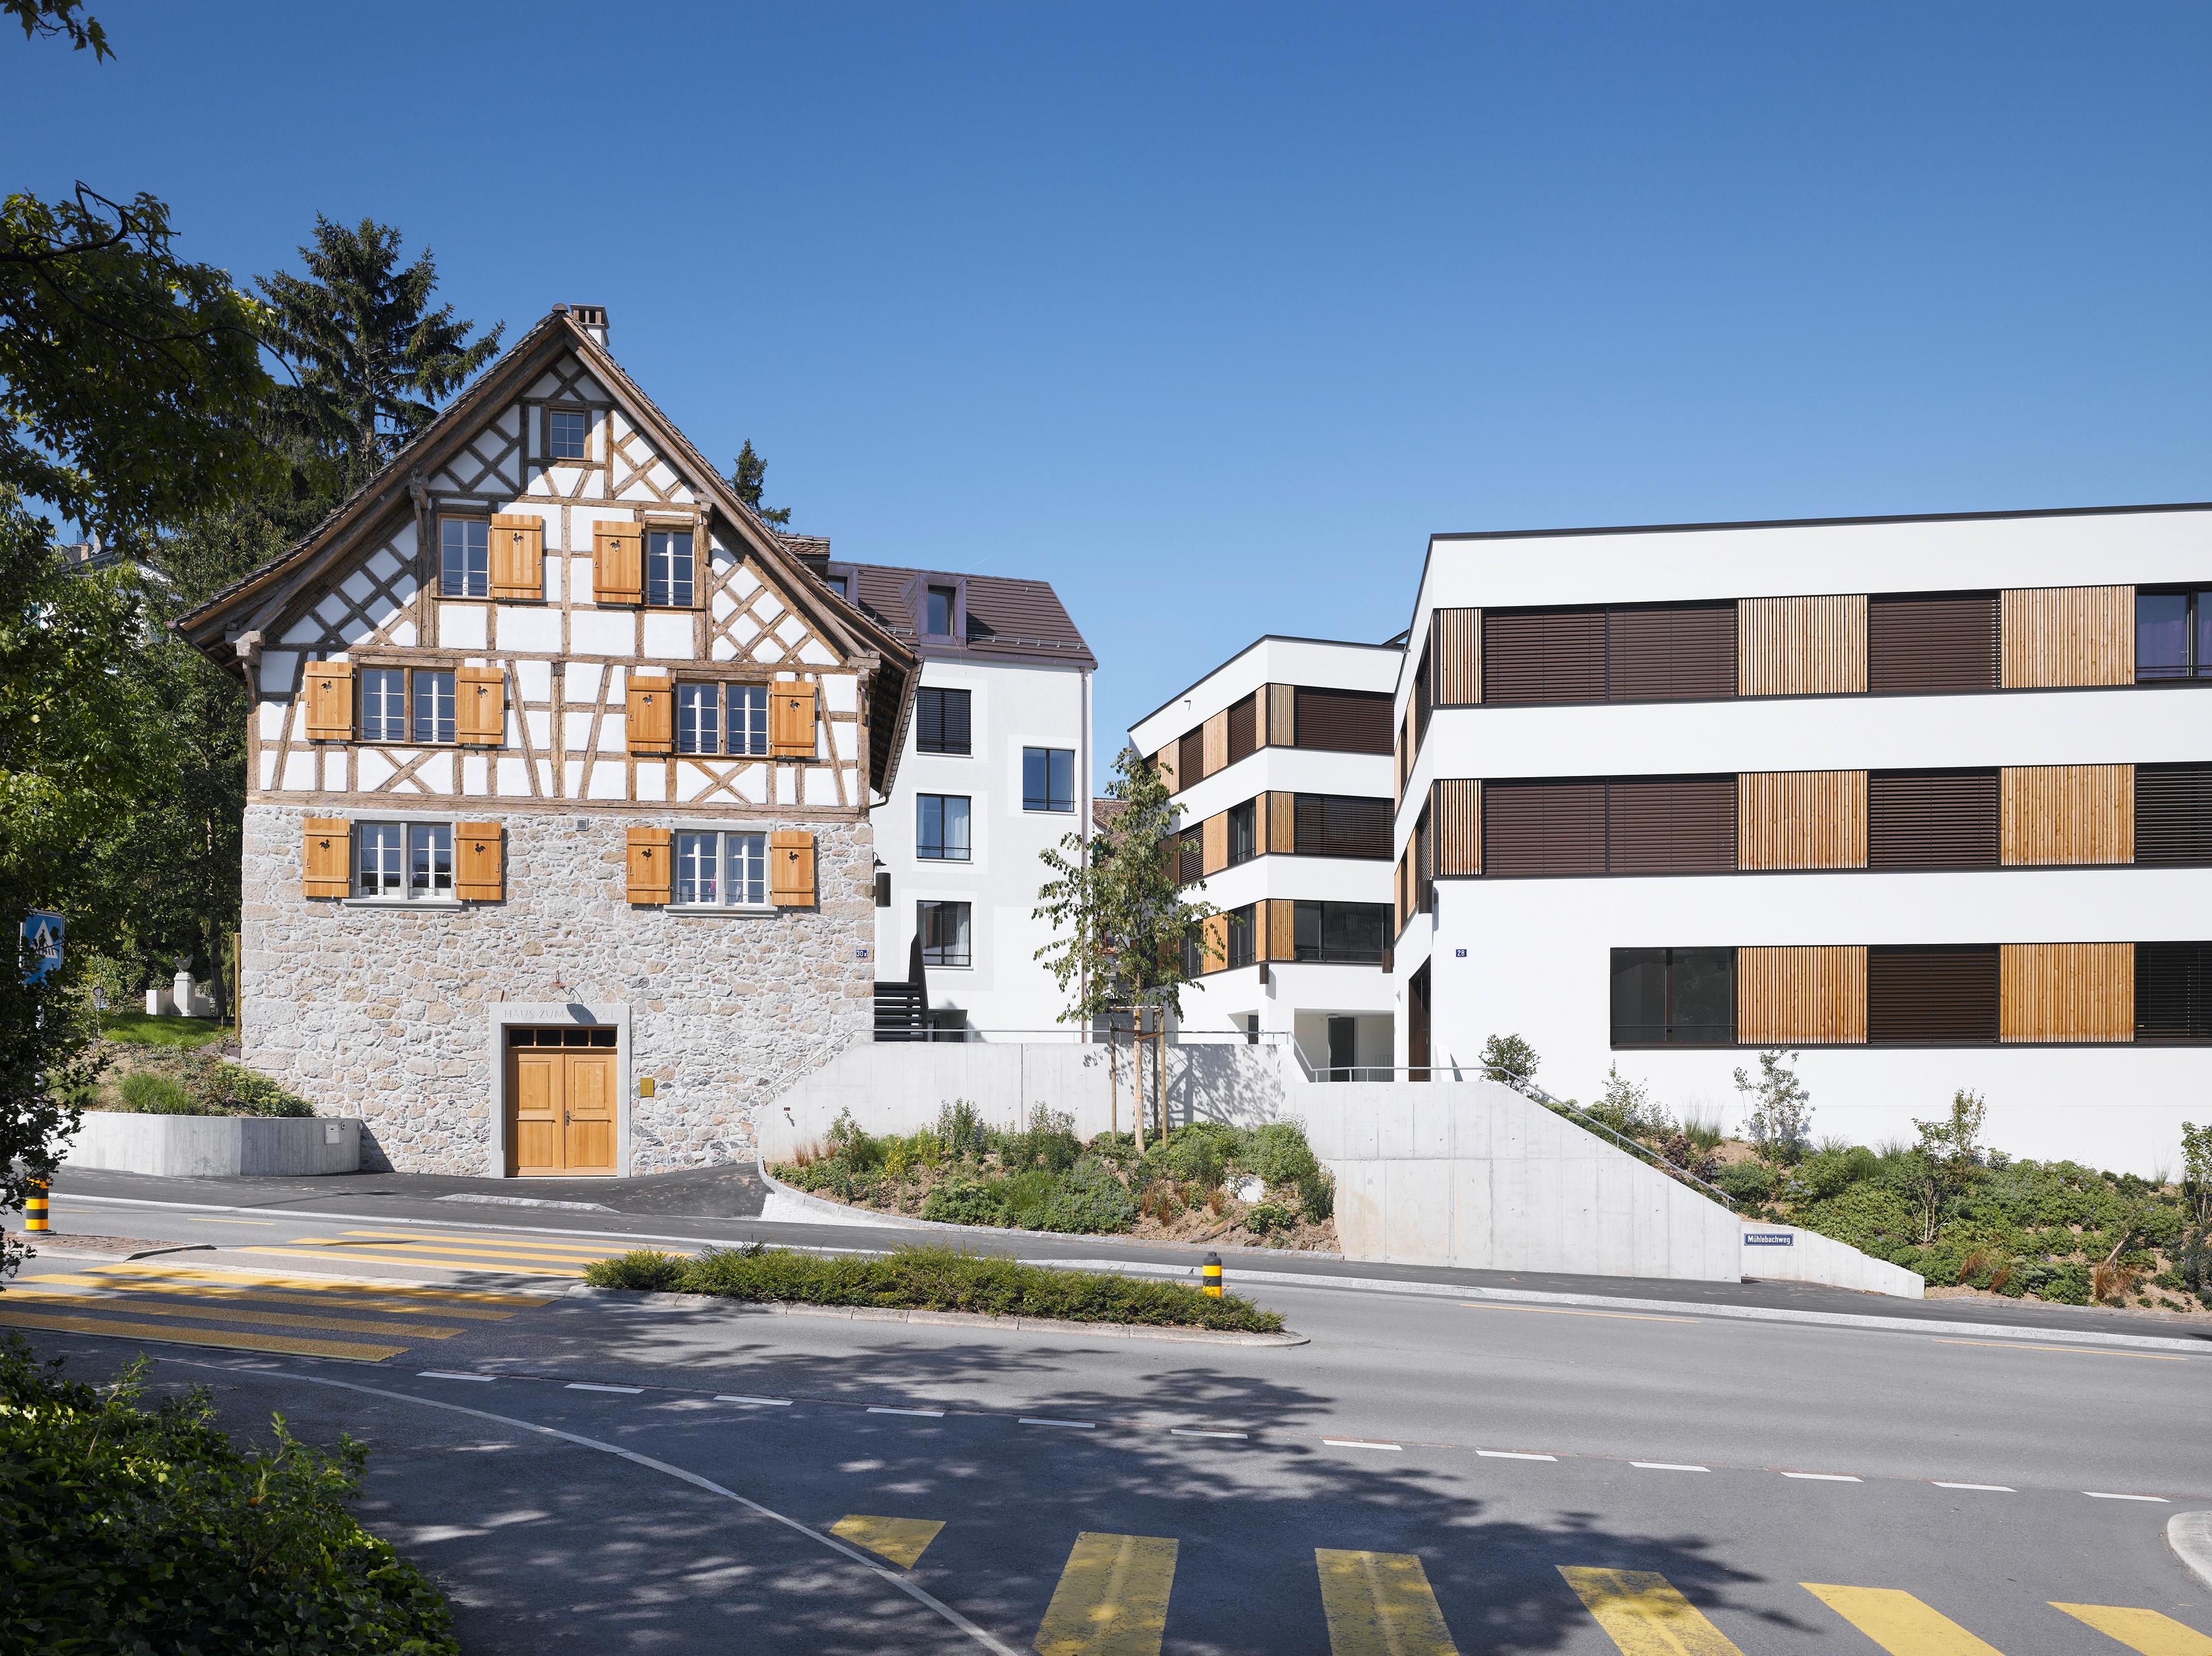  Architektur-Reportage Thalwil Areal: die Fassade ist in altem Stil gehalten, so beispielsweise mit Fensterläden aus Holz